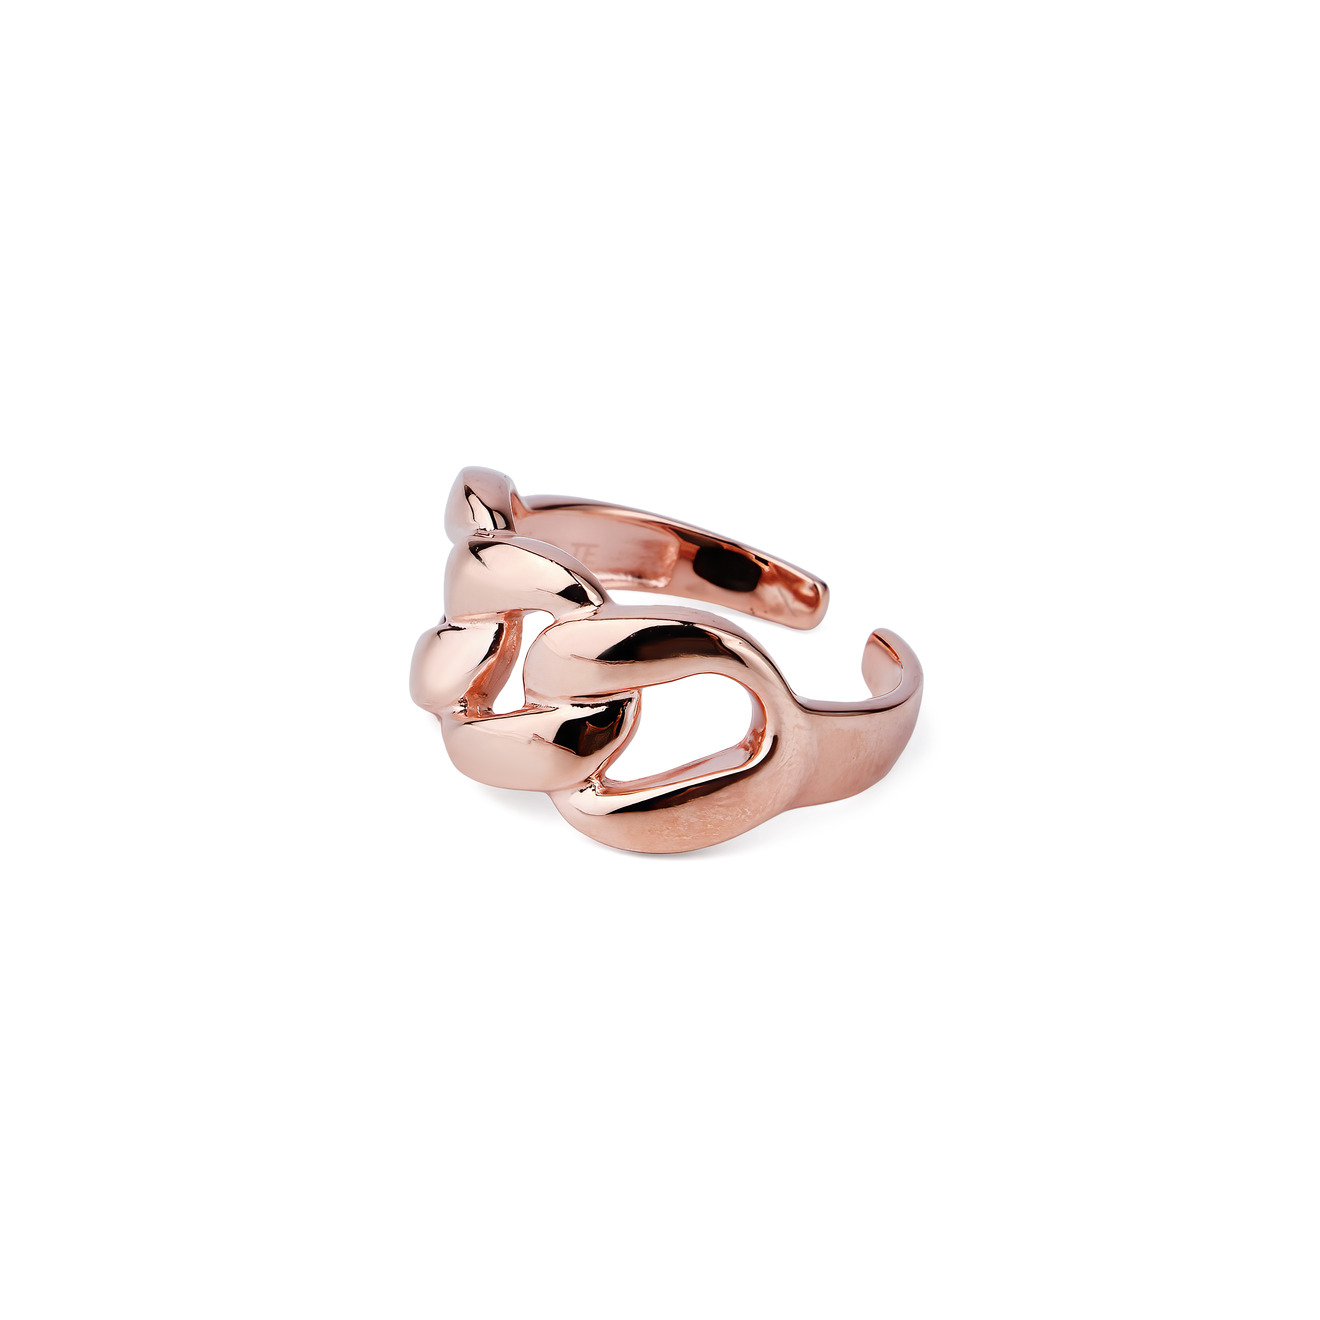 SKYE Кольцо-цепь из серебра, покрытое розовым золотом secrets кольцо тиара rose из серебра покрытое розовым золотом с горным хрусталем